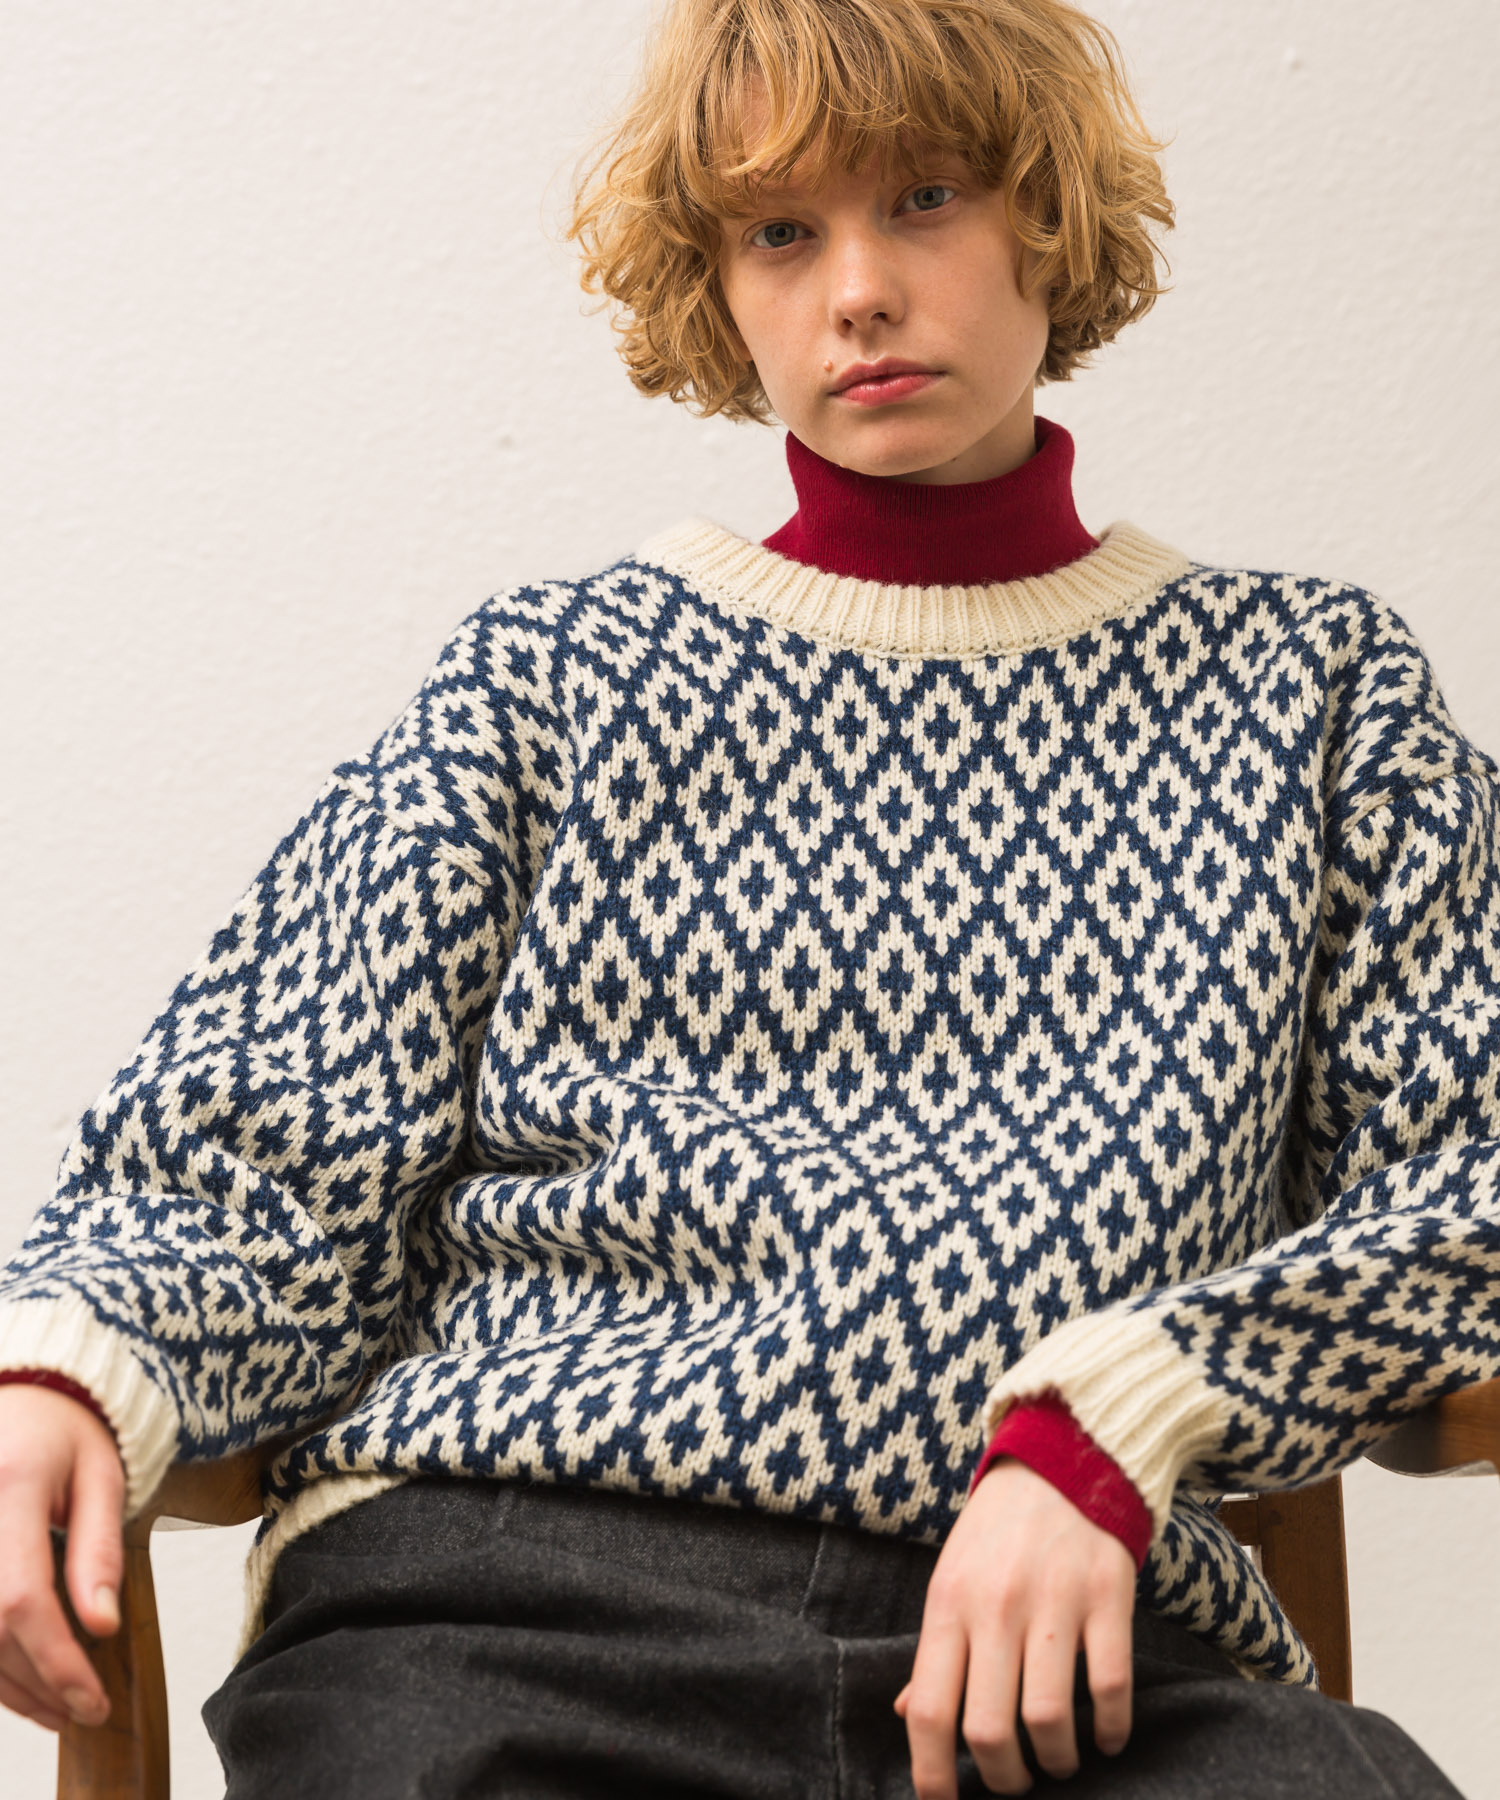 Argyle Pattern Jacquard Pullover Knit - NAVY